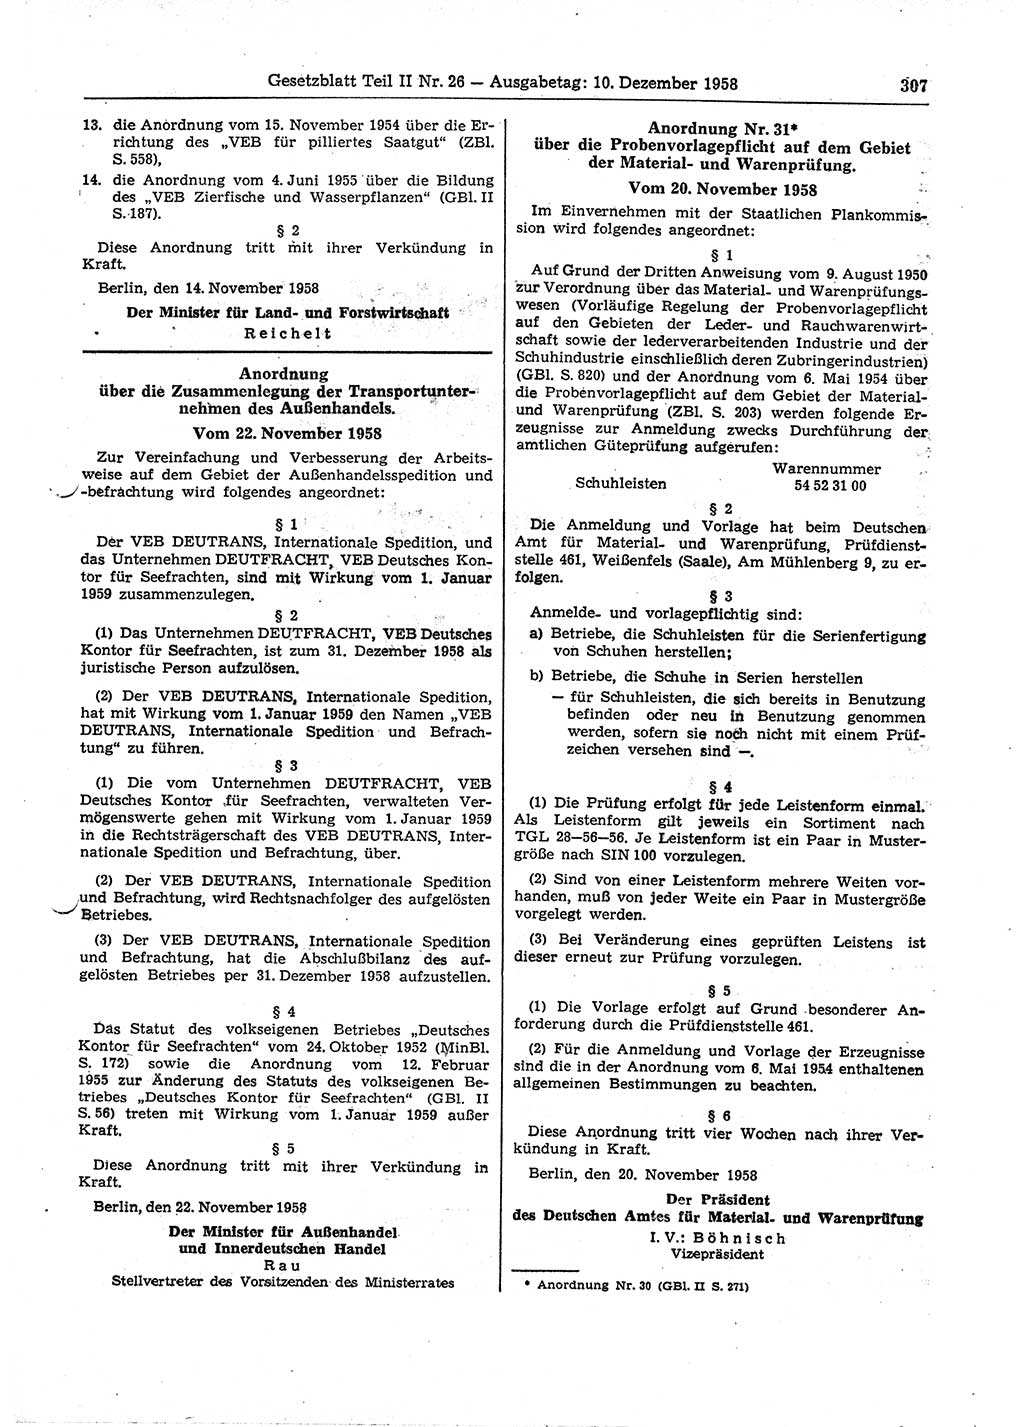 Gesetzblatt (GBl.) der Deutschen Demokratischen Republik (DDR) Teil ⅠⅠ 1958, Seite 307 (GBl. DDR ⅠⅠ 1958, S. 307)